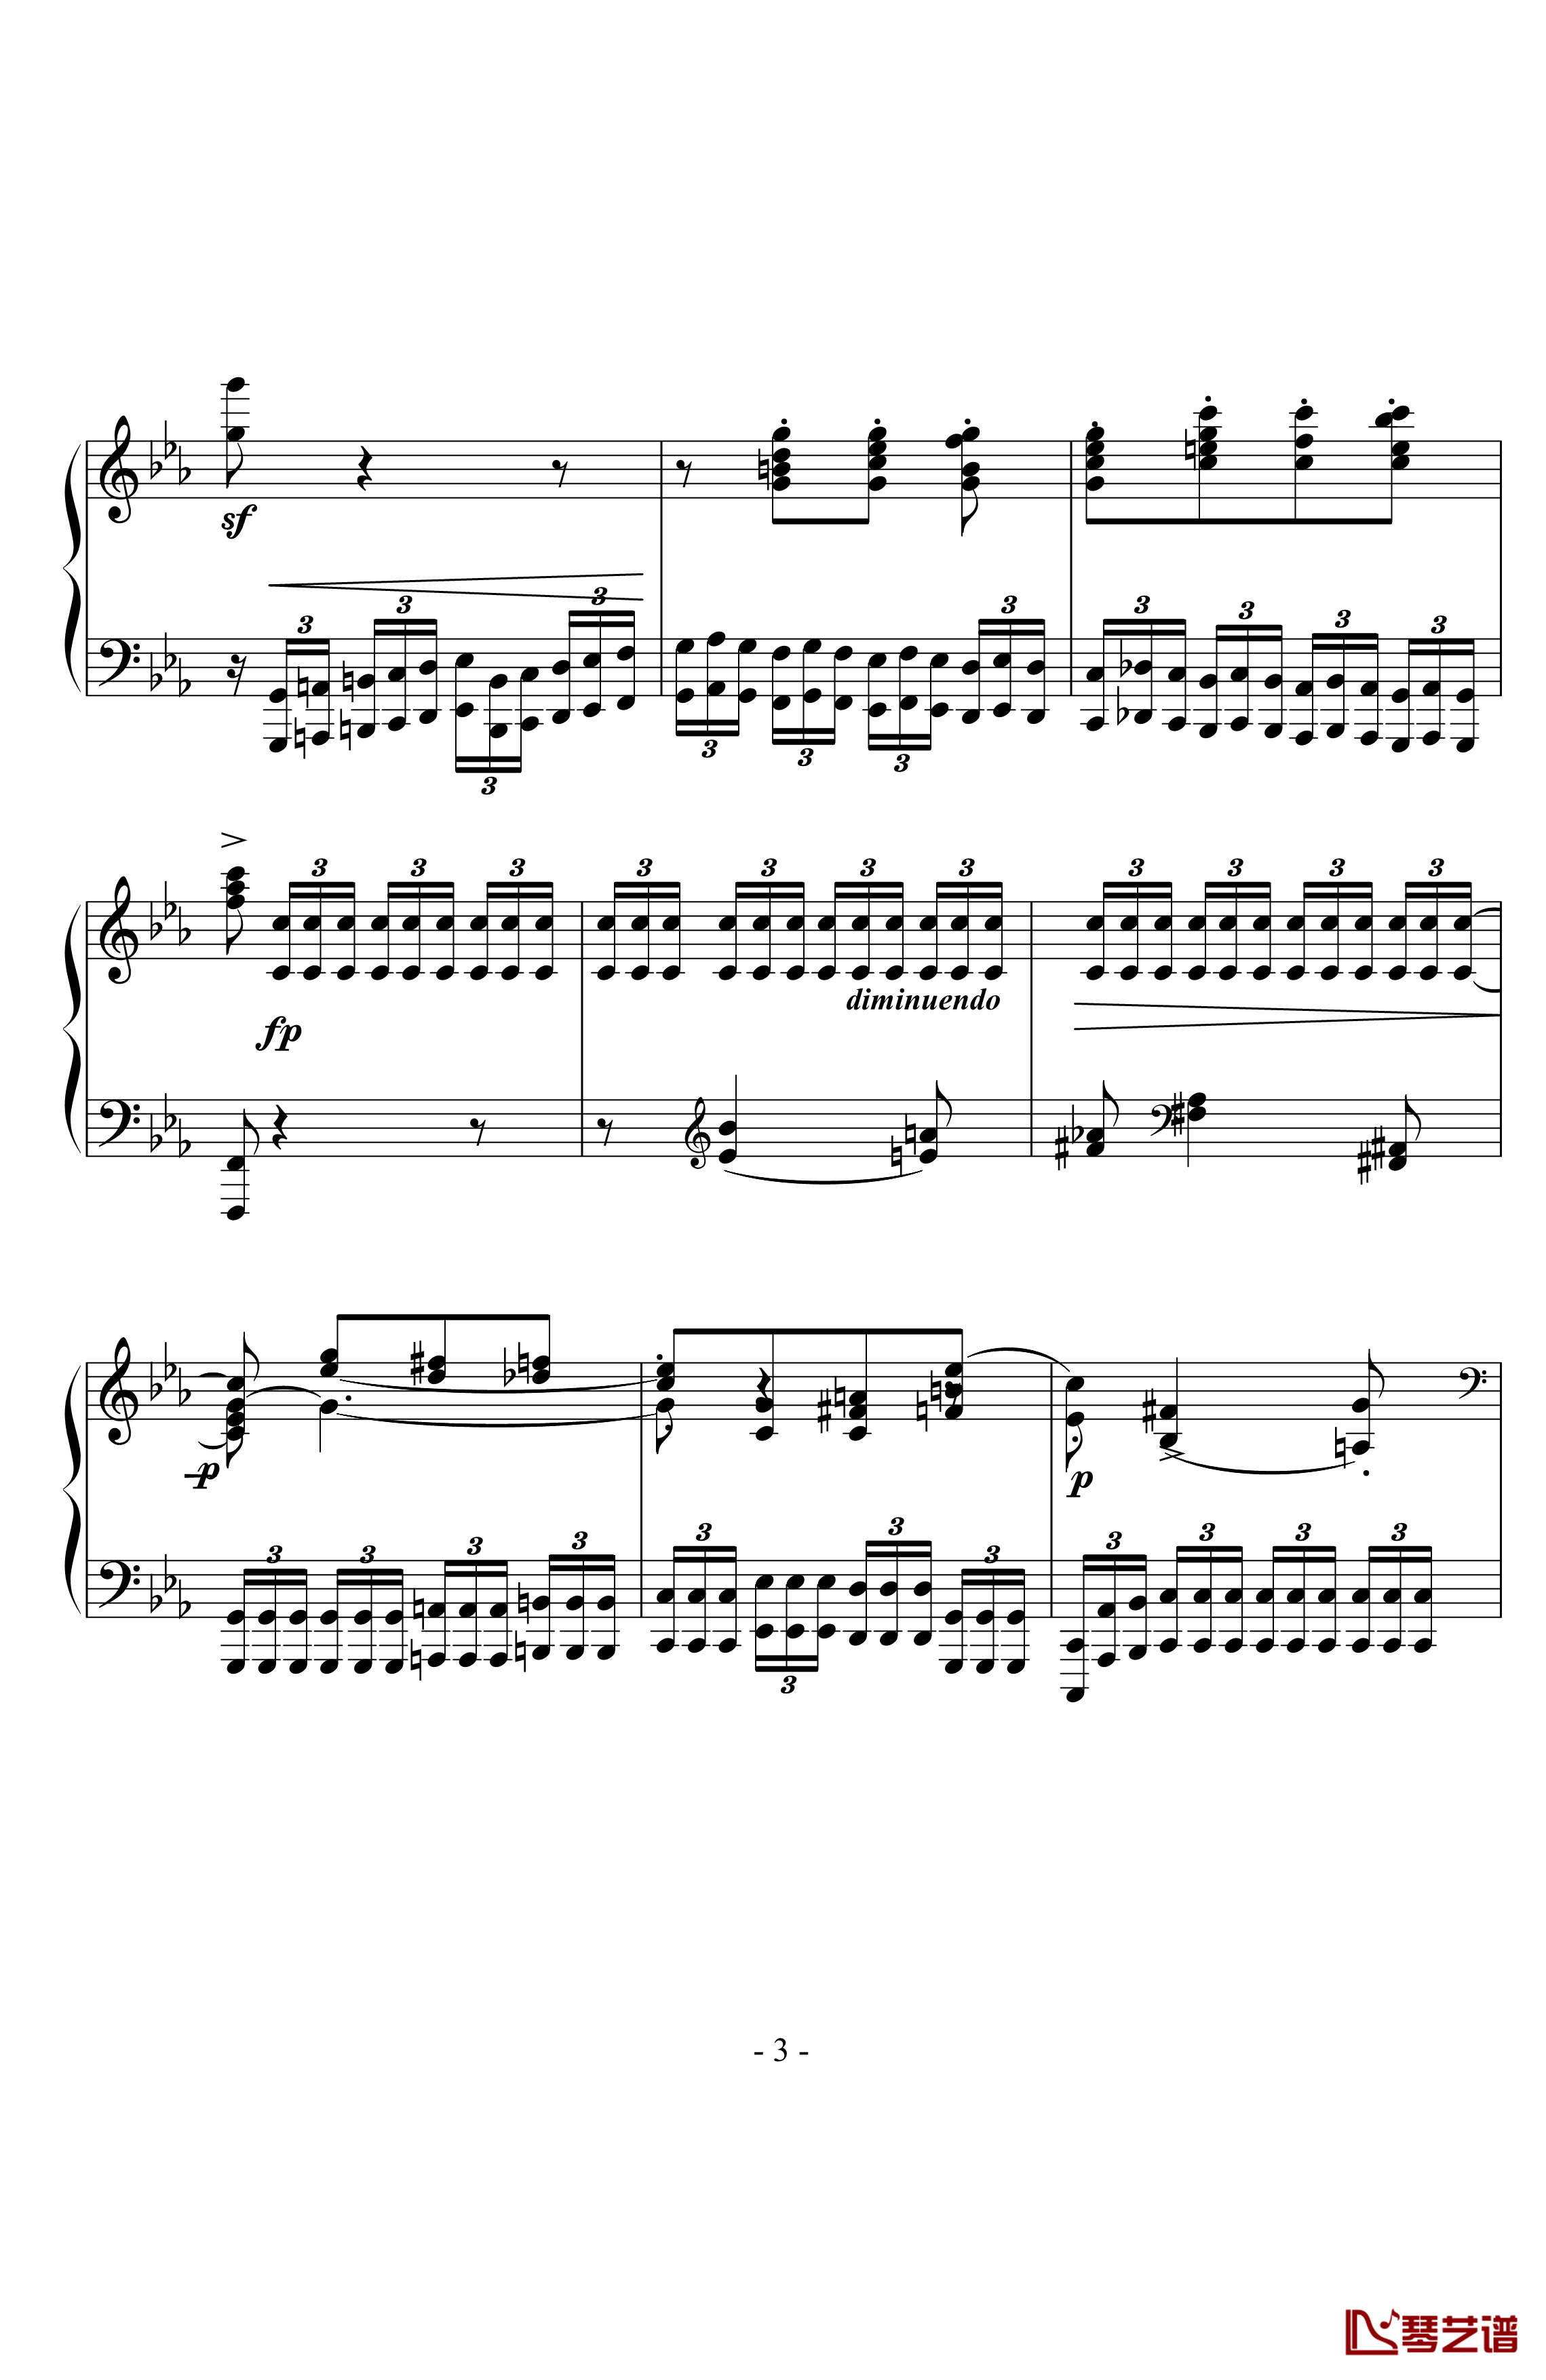 八度练习曲钢琴谱-十级类技巧性练习曲-卡本良斯基3